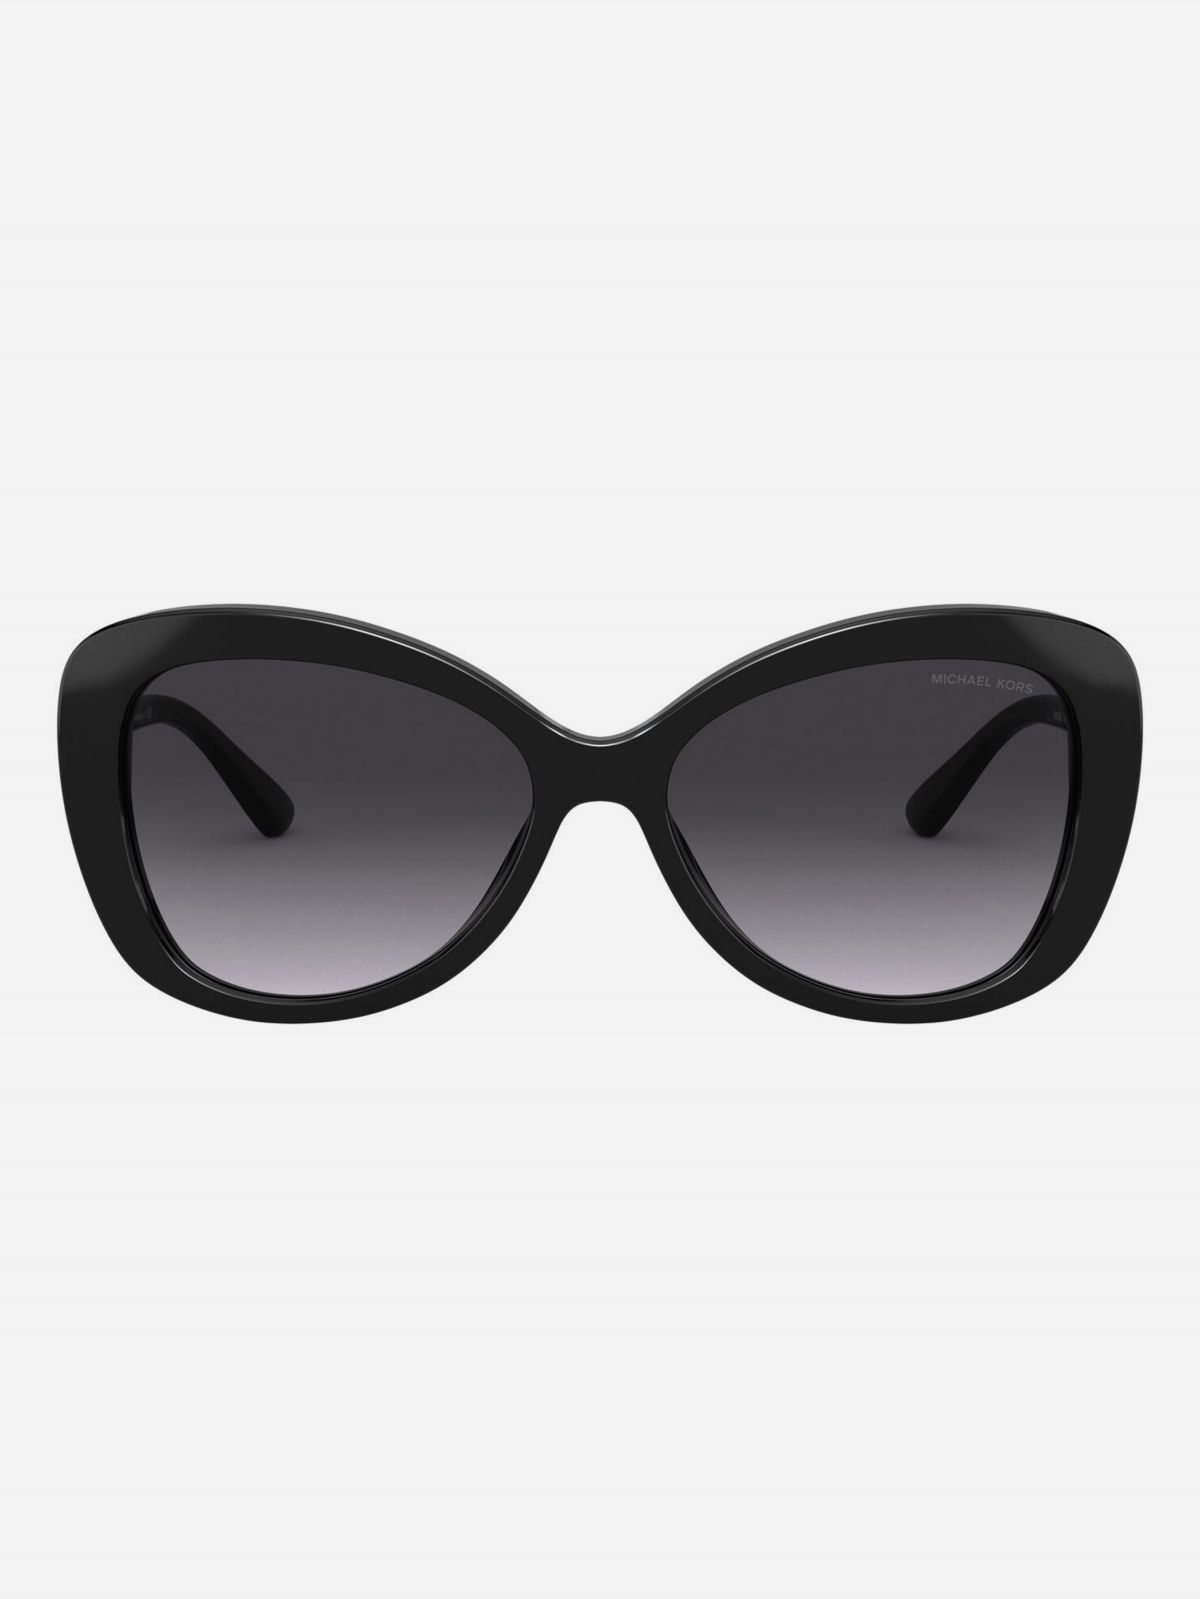  משקפי שמש בסגנון פרפר של MICHAEL KORS